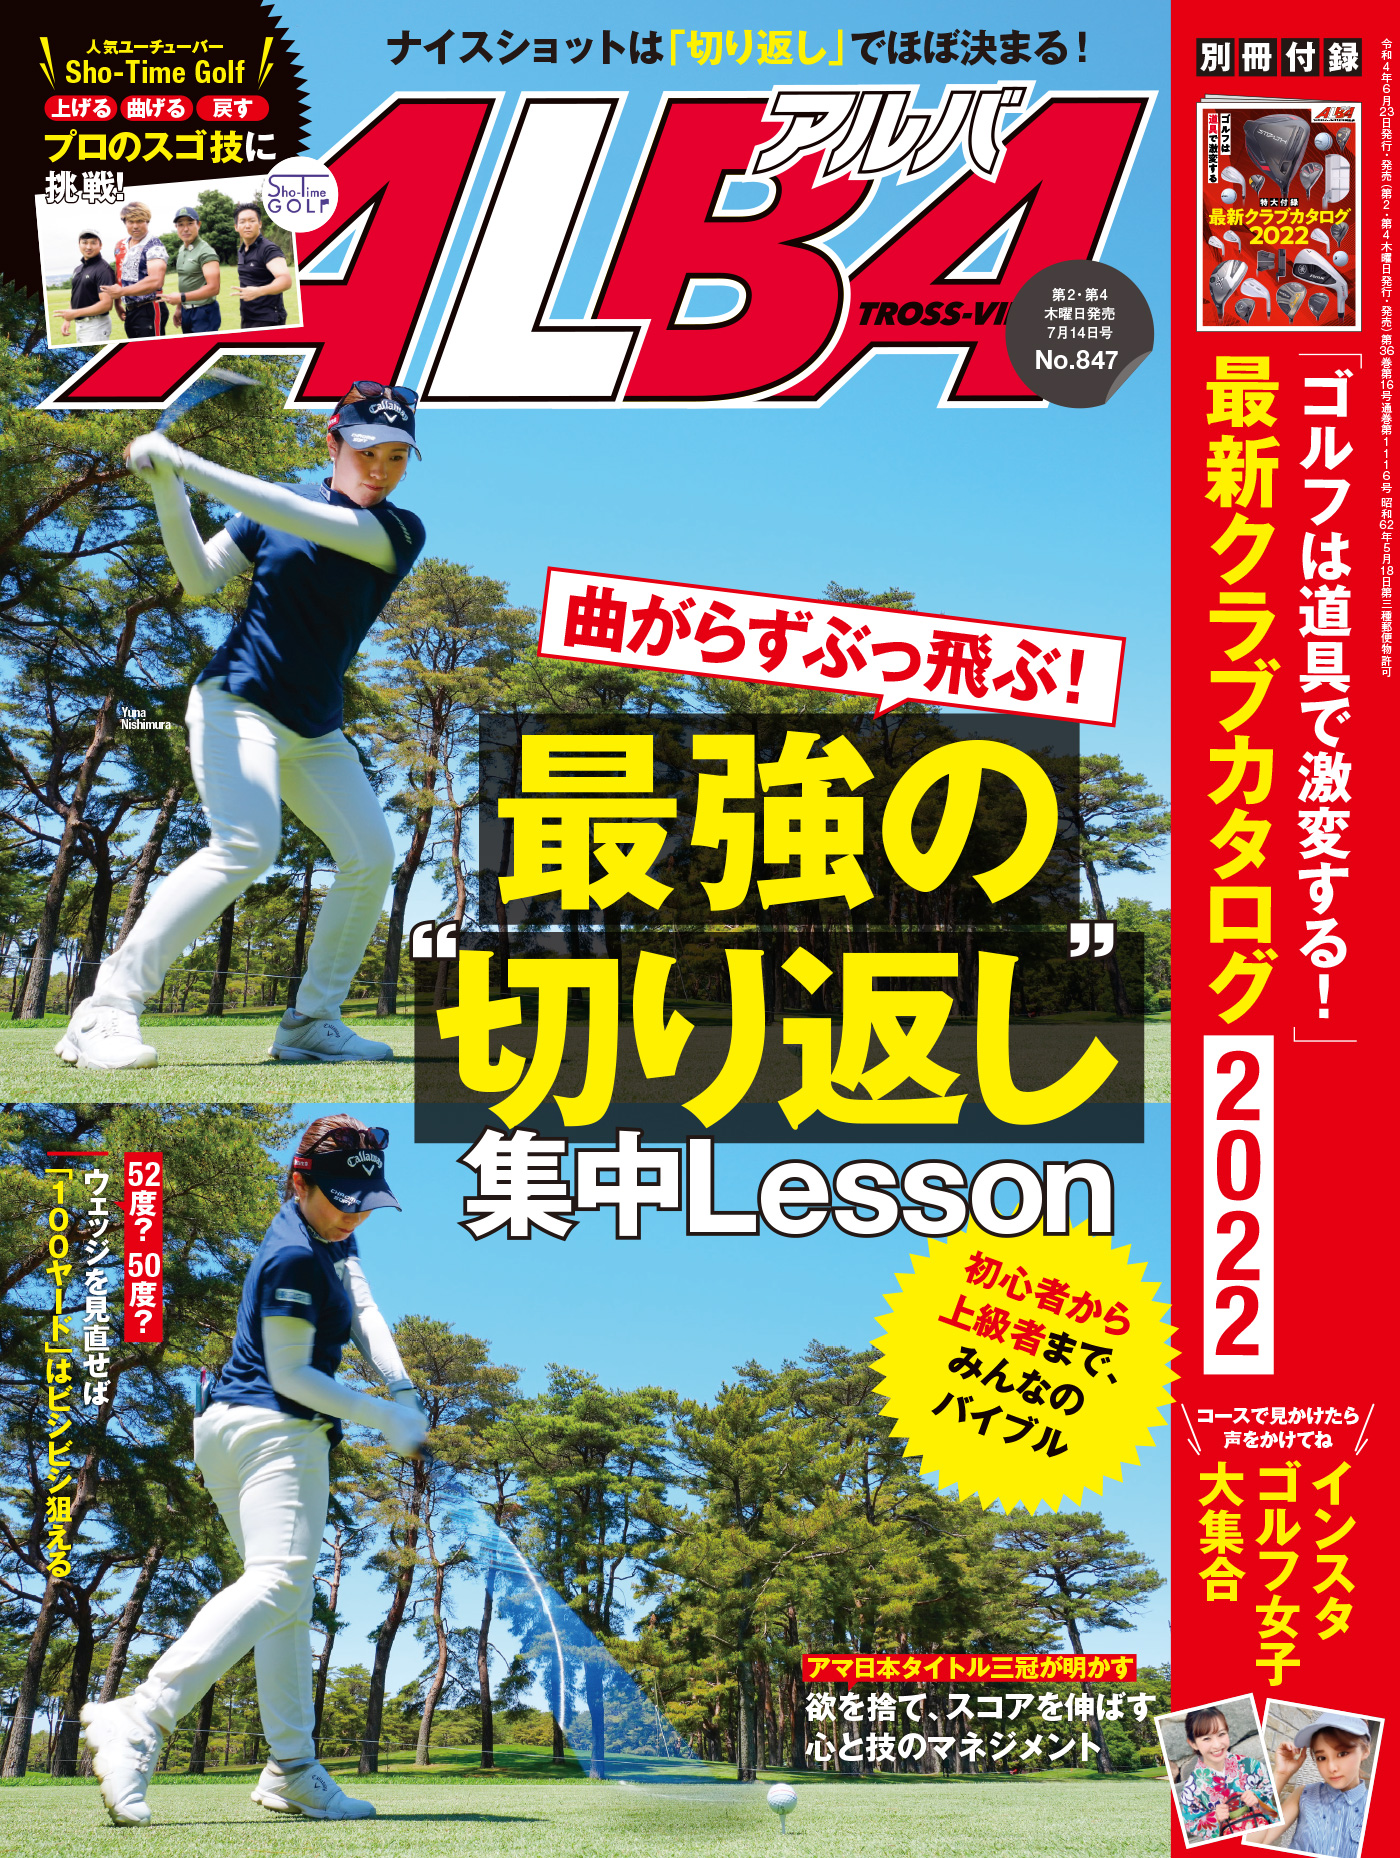 チーム芹澤に学ぶゴルフ(DVD NHK) - スポーツ・フィットネス